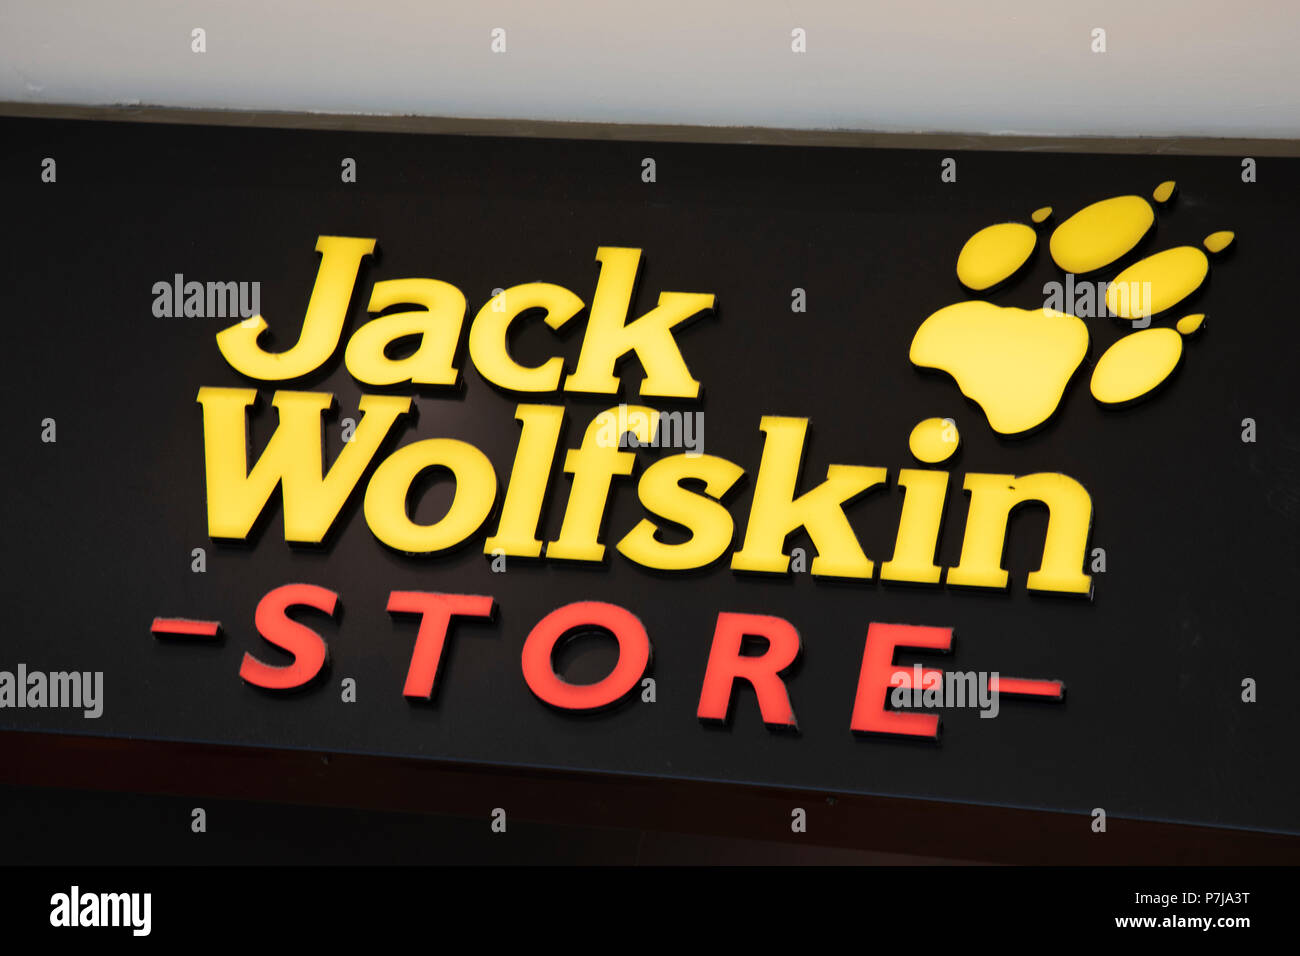 Zeichen für die Outdoor Bekleidung Marke Jack Wolfskin in Birmingham,  Vereinigtes Königreich Stockfotografie - Alamy